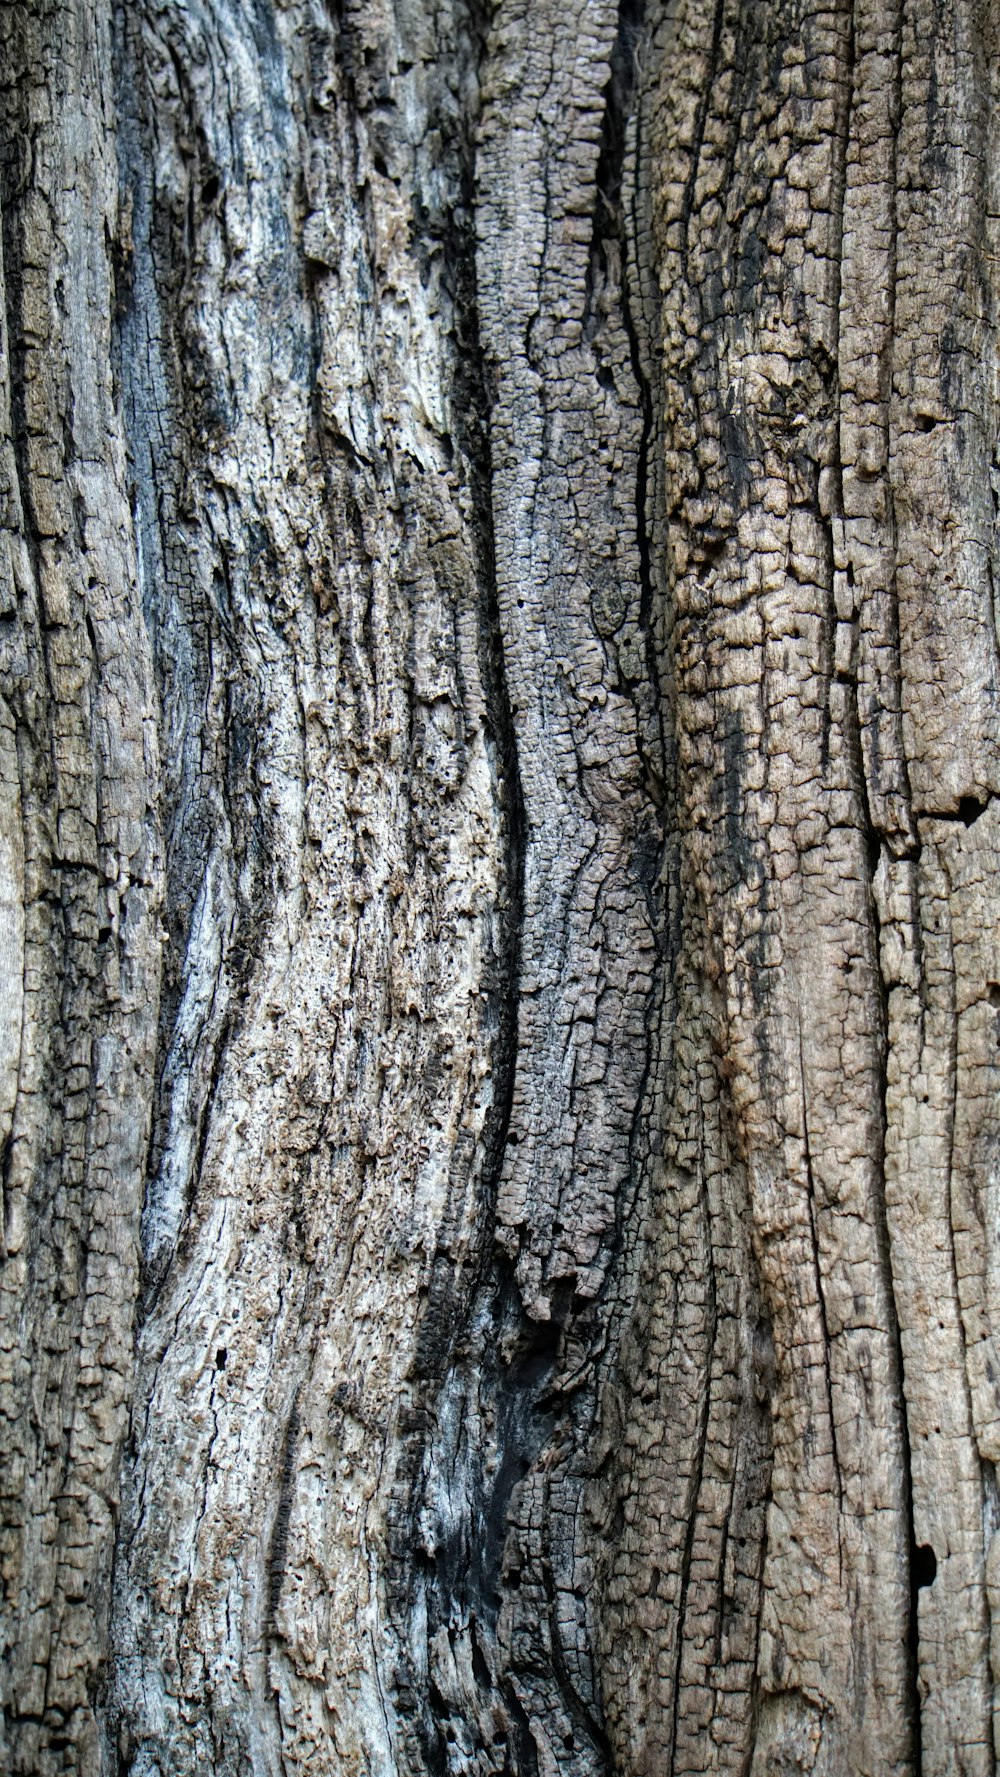 Un primer plano del tronco de un árbol con un pájaro encaramado encima de él